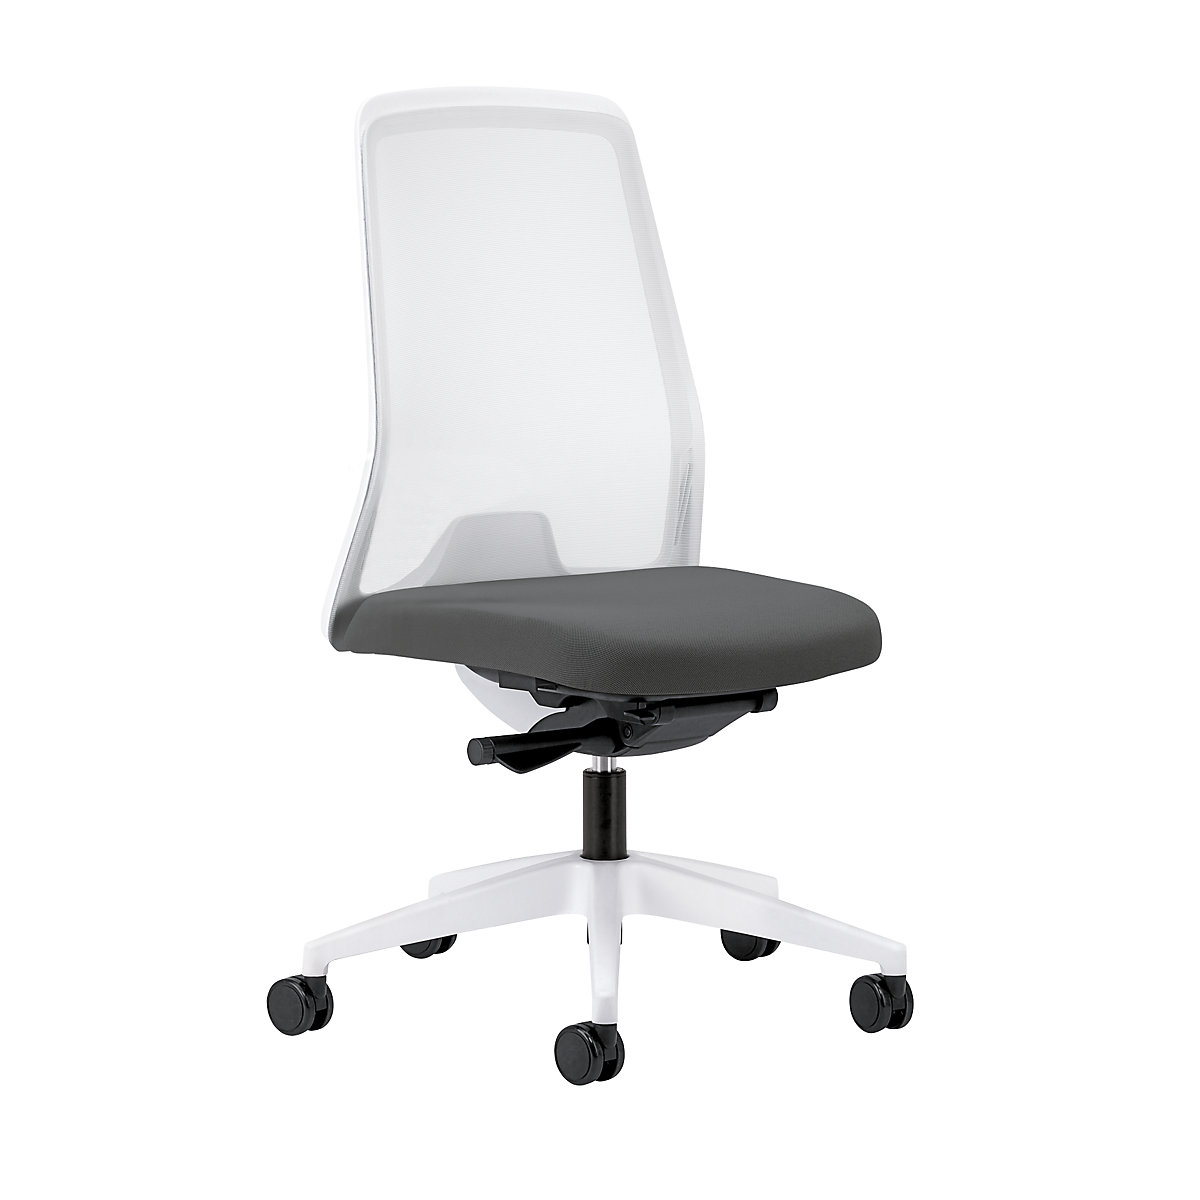 Udobna okretna stolica EVERY, mrežasti naslon za leđa u bijeloj boji – interstuhl